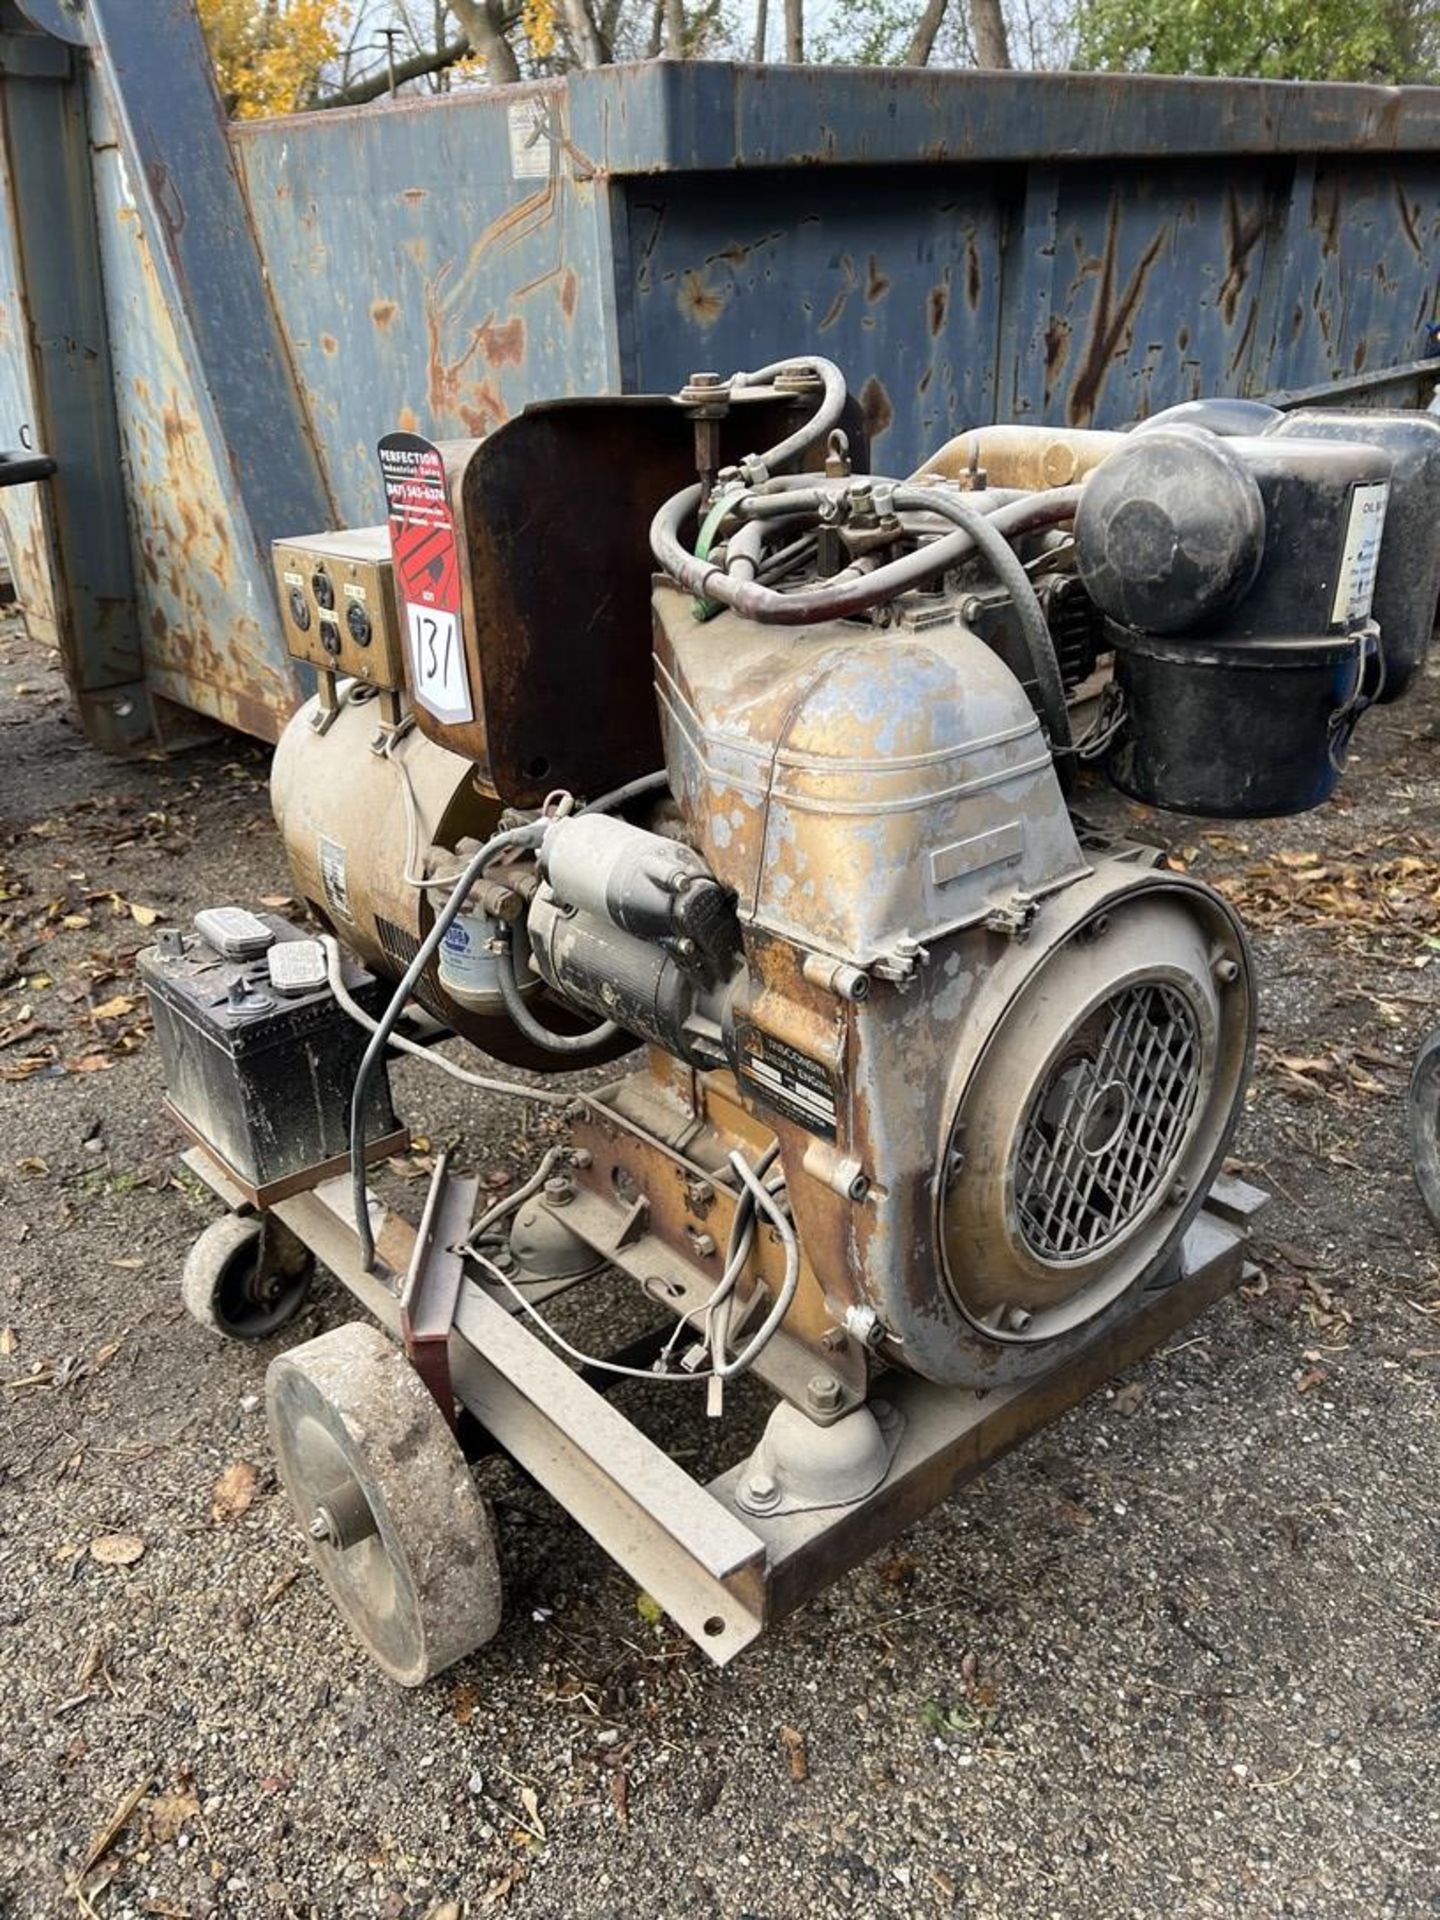 KURZ & ROOT E1535M773F Generator, s/n PU-286NH, 5 KW, 6.25 KVA, w/ Wisconsin Diesel Engine - Image 5 of 7